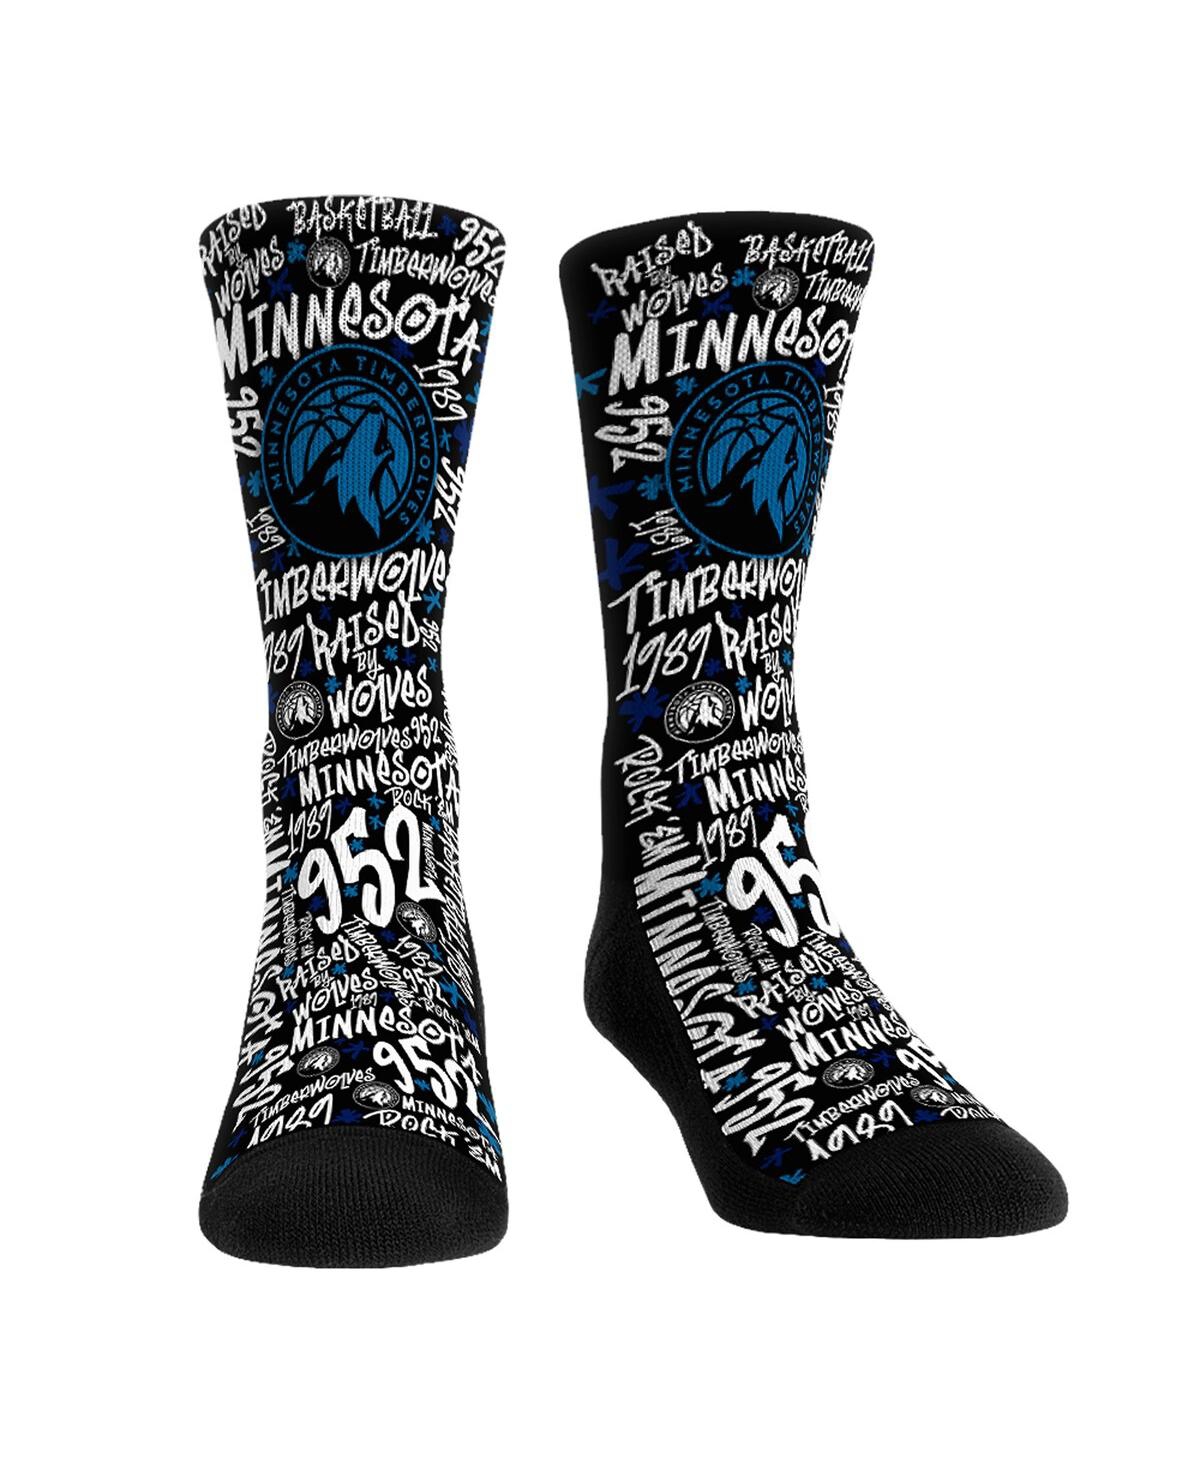 Rock 'em Men's And Women's  Socks Minnesota Timberwolves Graffiti Crew Socks In Black,white